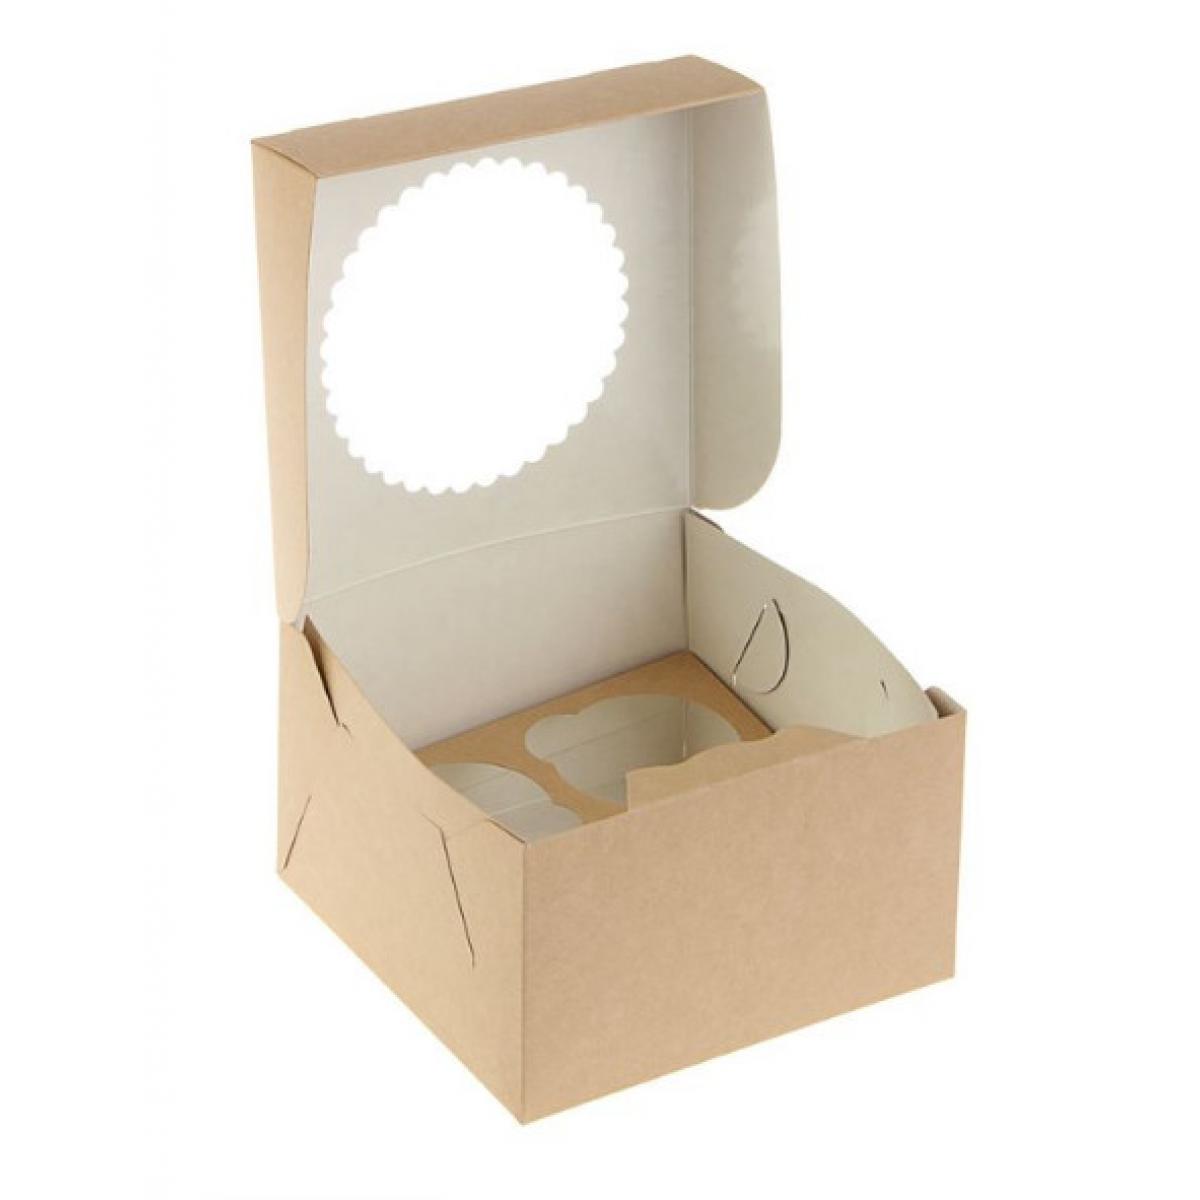 Коробка для капкейка купить. Упаковка Eco muf 4. Упаковка для капкейков Eco muf 1. Упаковка Eco muf 4 (150 шт./кор.). Коробка для 4 капкейков 160x160x100 крафт с окном.